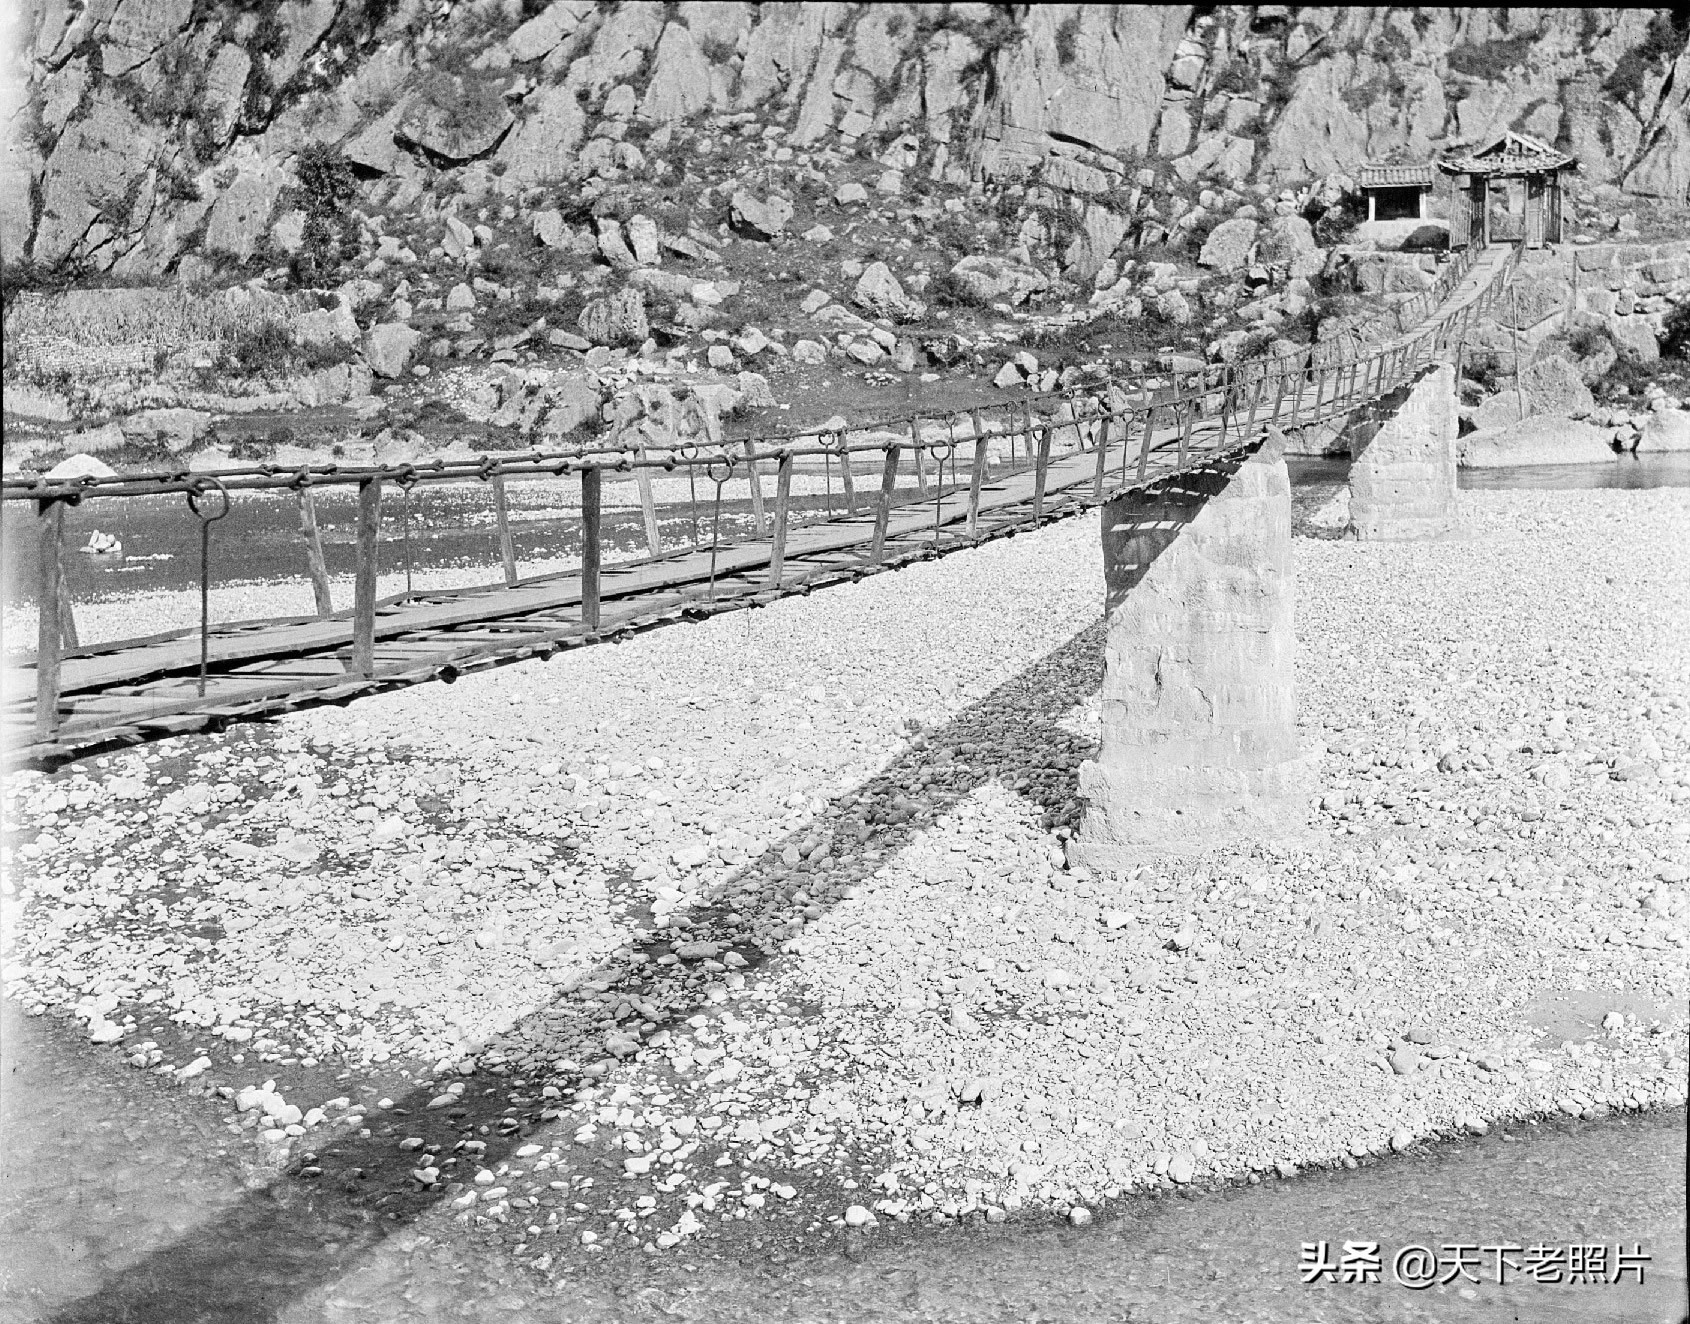 1917年四川安县老照片 百年前的安县景象及人物风貌